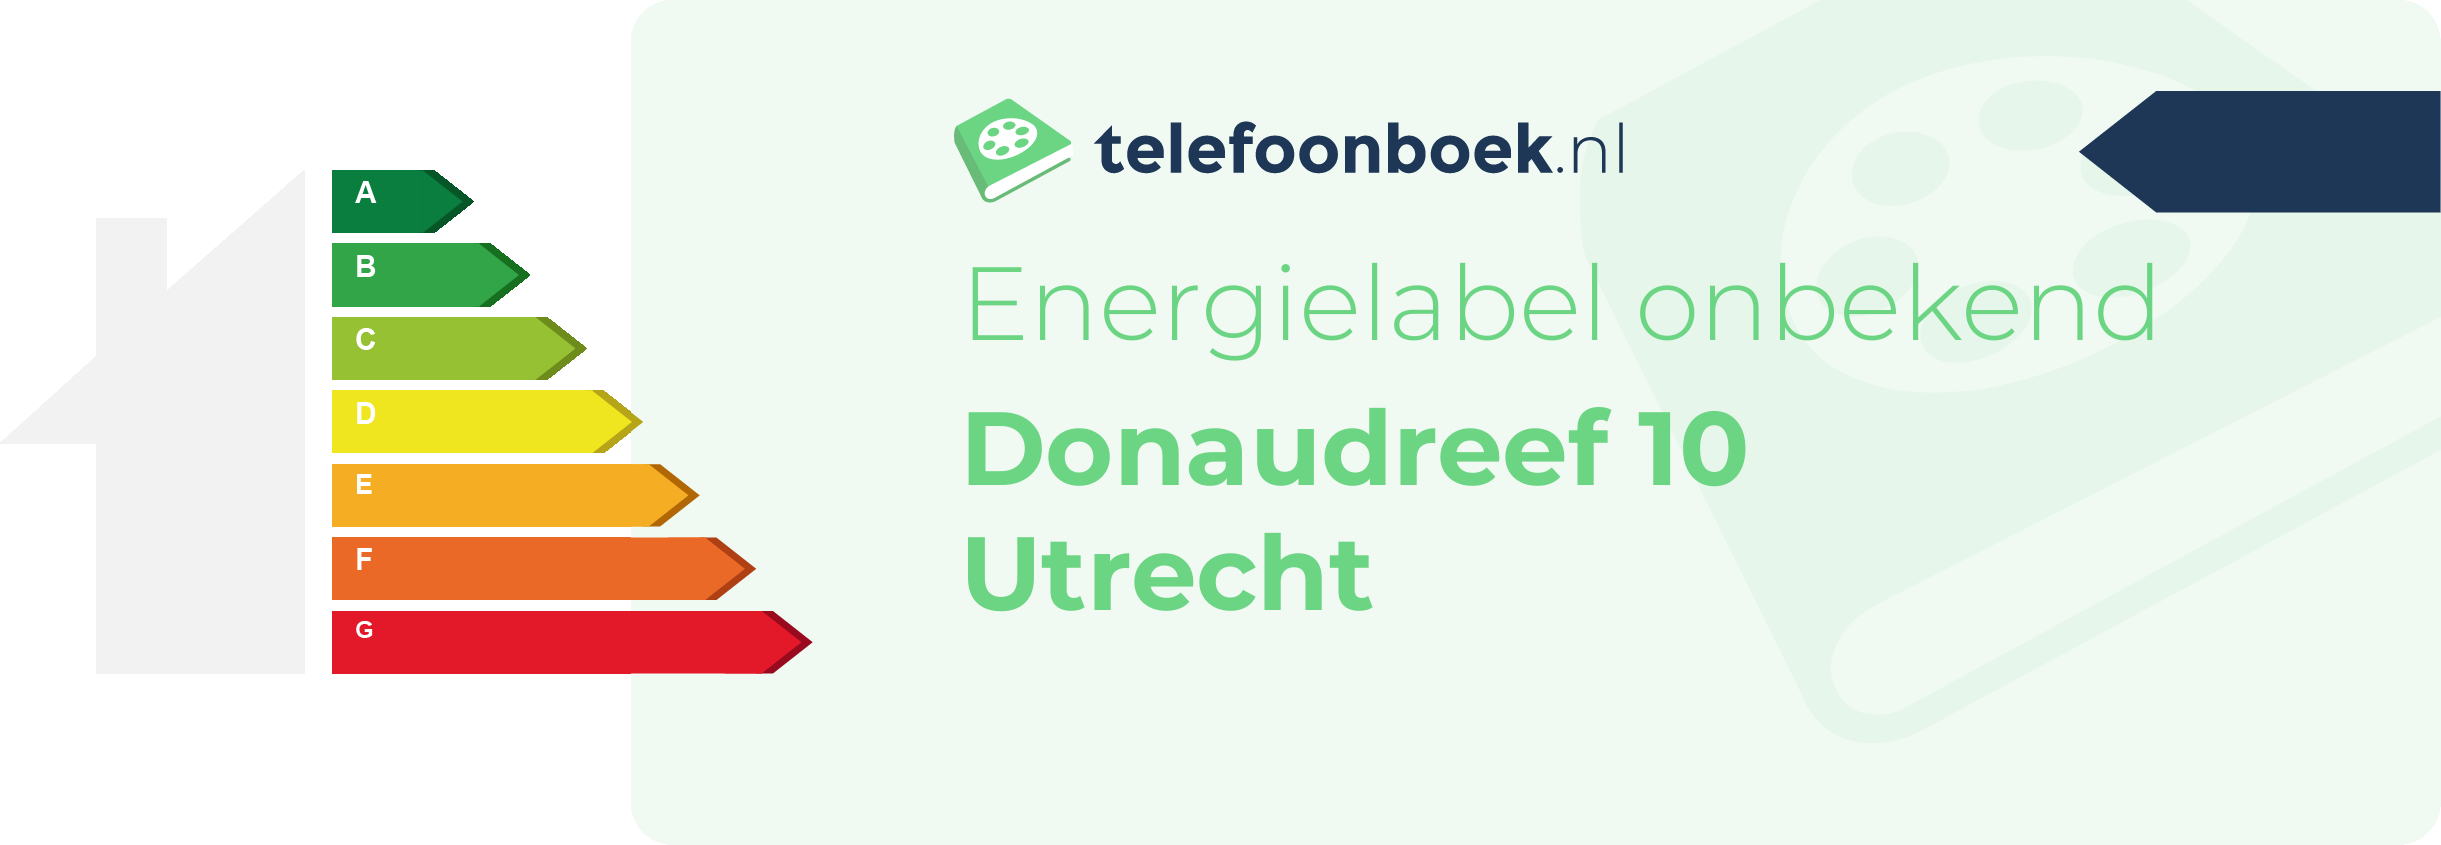 Energielabel Donaudreef 10 Utrecht